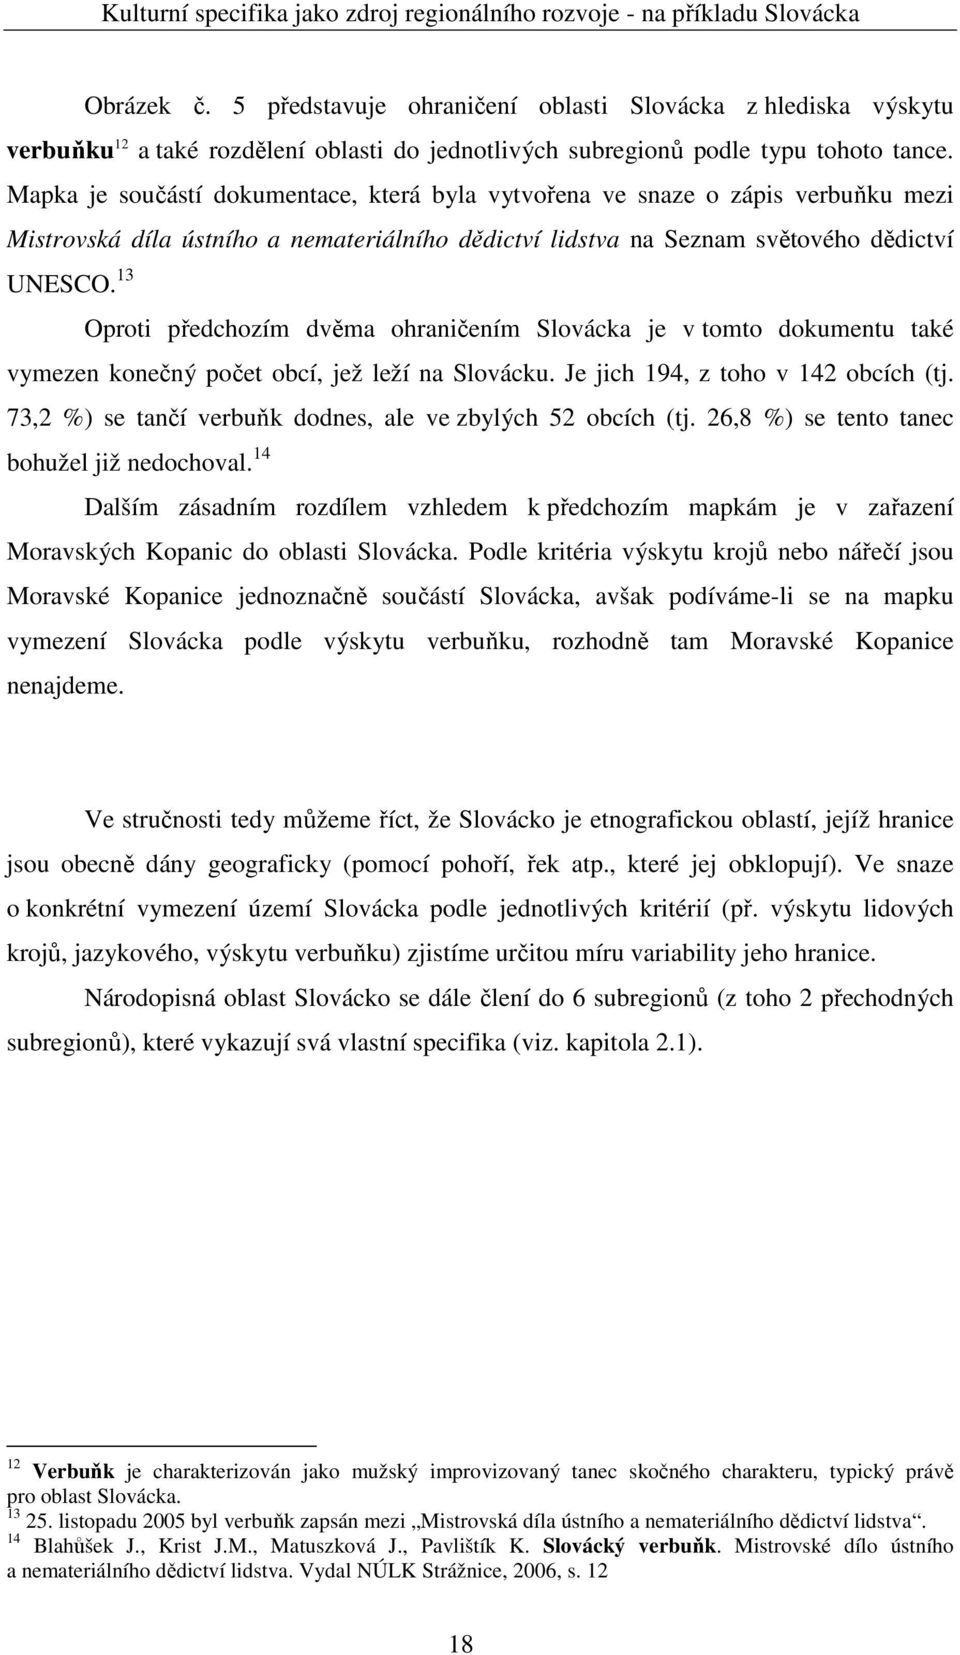 13 Oproti předchozím dvěma ohraničením Slovácka je v tomto dokumentu také vymezen konečný počet obcí, jež leží na Slovácku. Je jich 194, z toho v 142 obcích (tj.